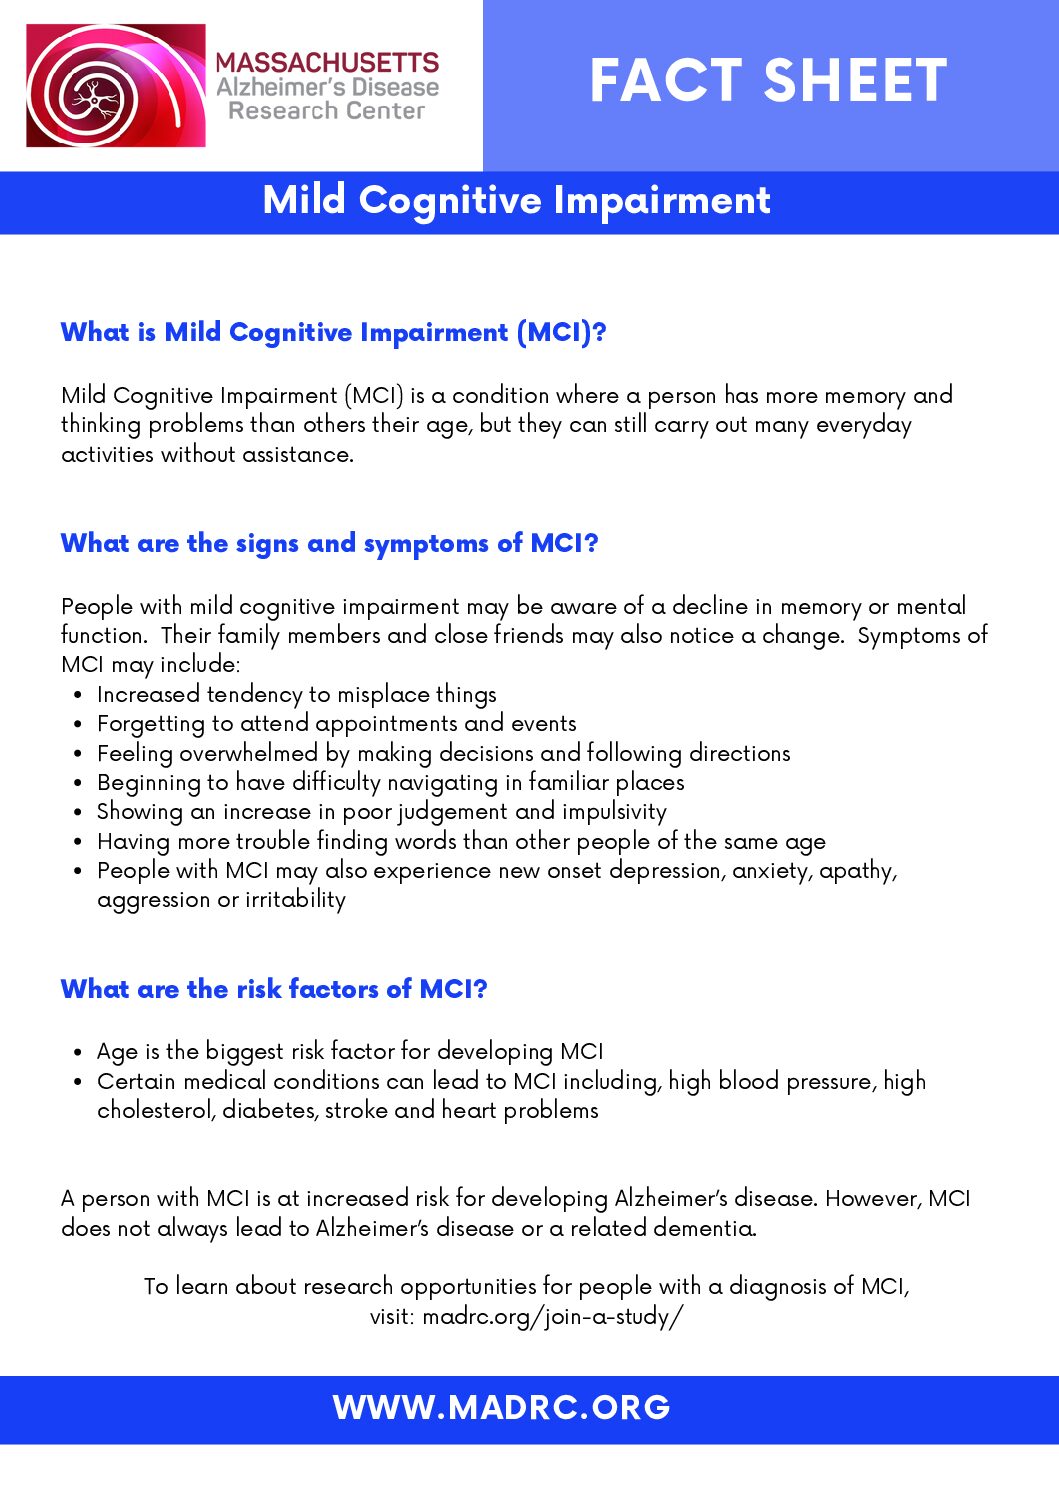 Mild cognitive impairment sheet